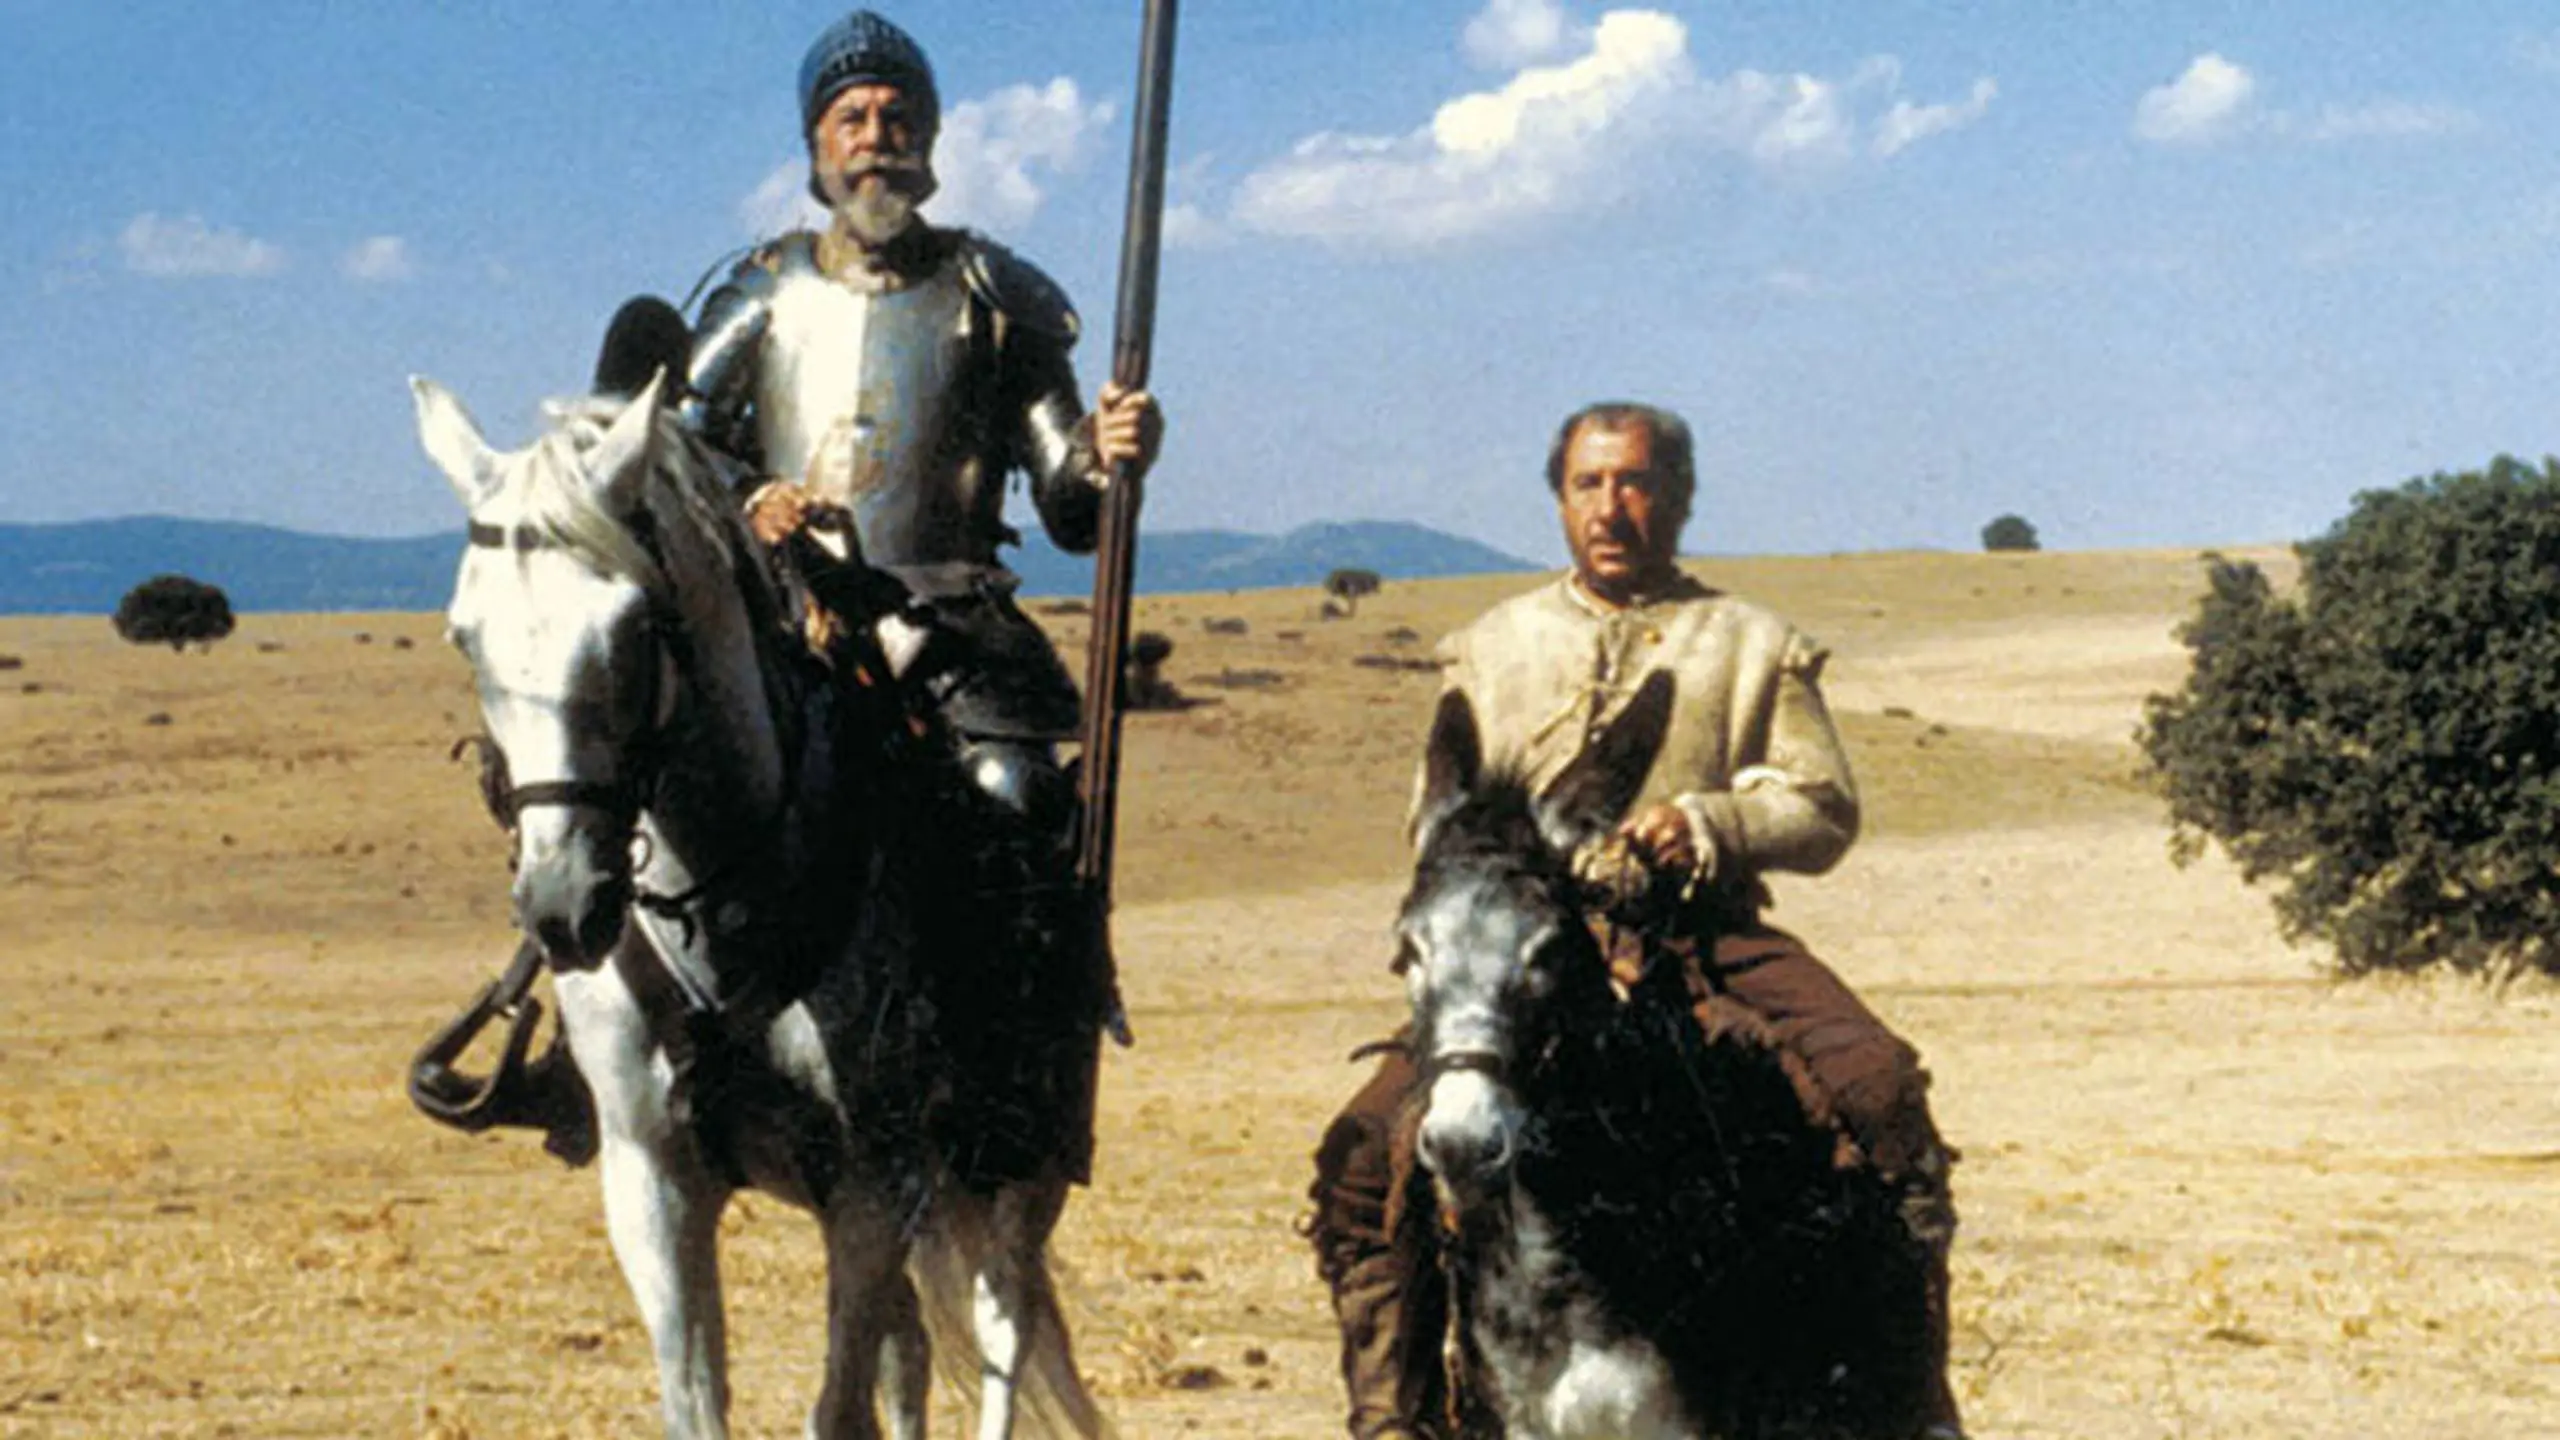 El Quijote de Miguel de Cervantes